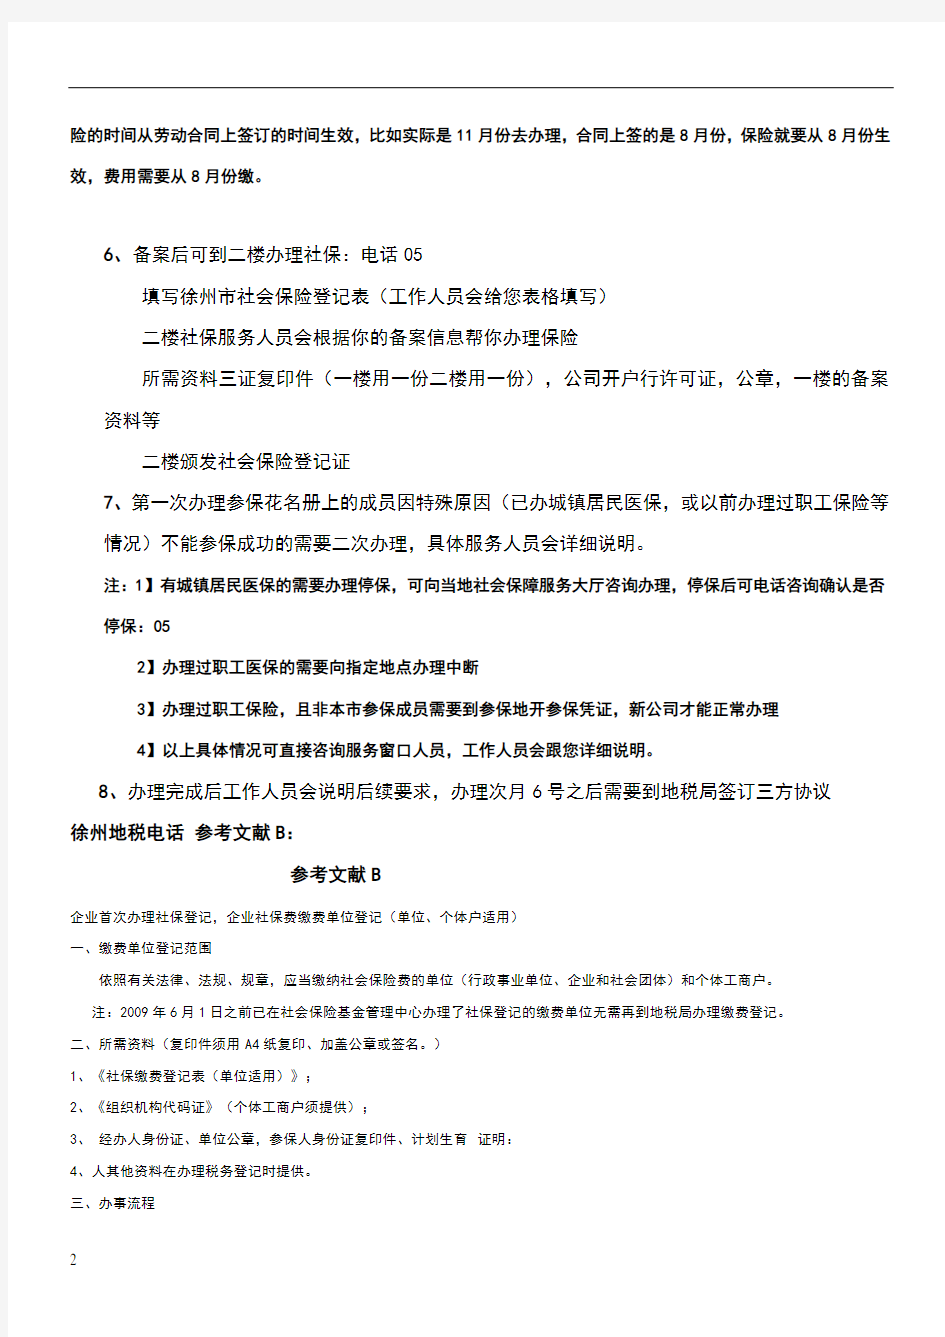 徐州市新公司办理职工保险流程说明